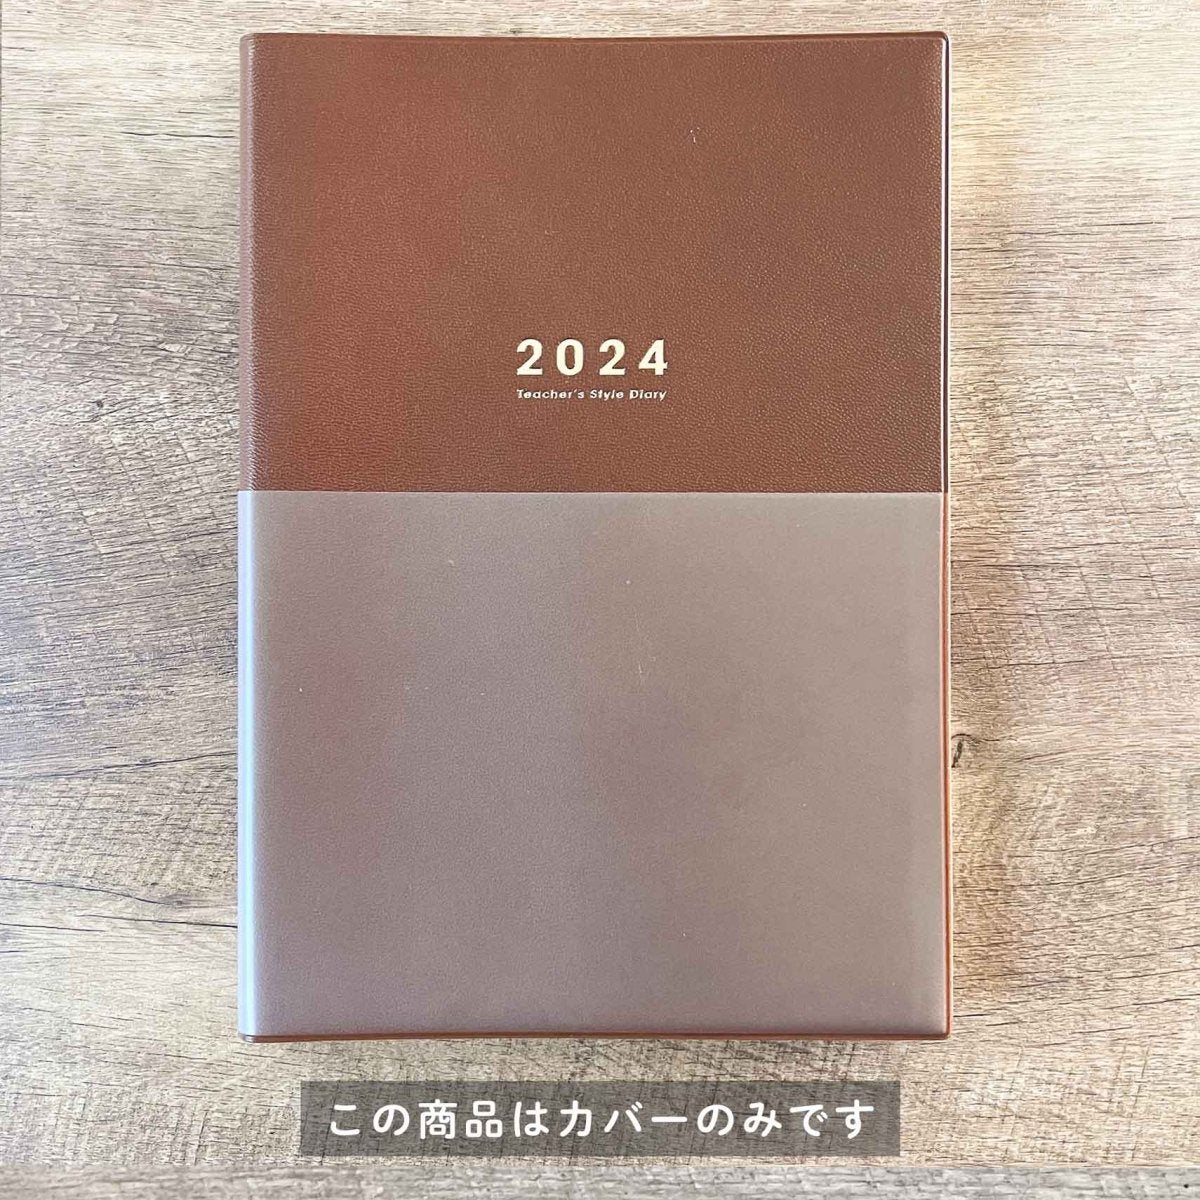 【Brown】着せかえカバー 先生スタイル手帳2024 B5サイズ - 東洋館出版社